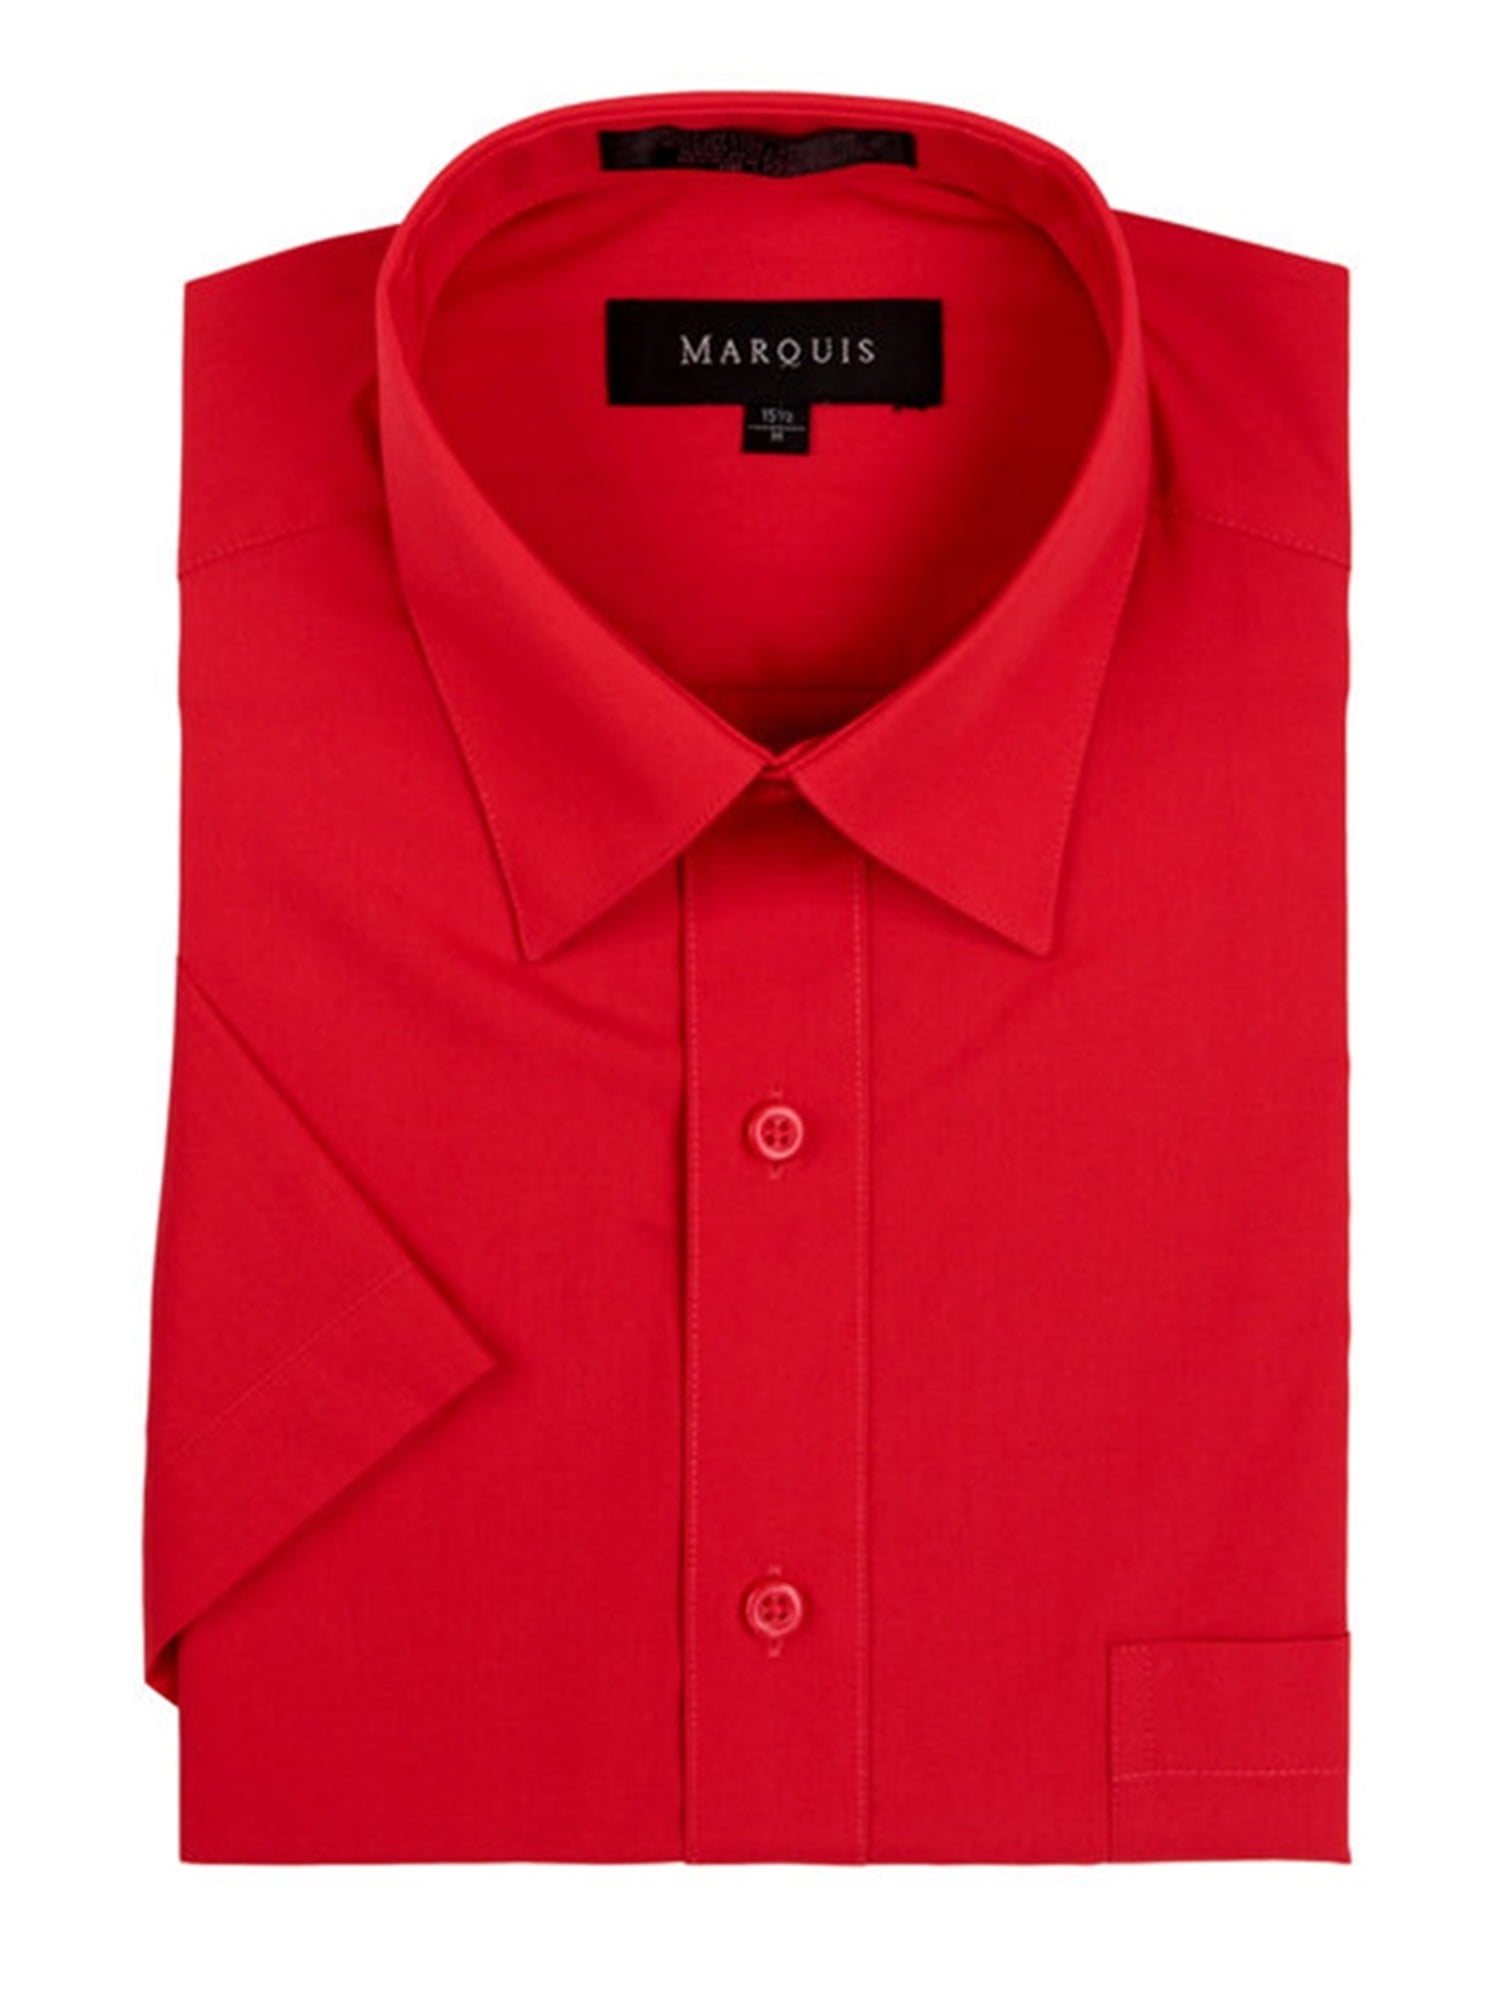 Marquis Men's Red Short Sleeve Regular Fit Dress shirt - S - Walmart.com